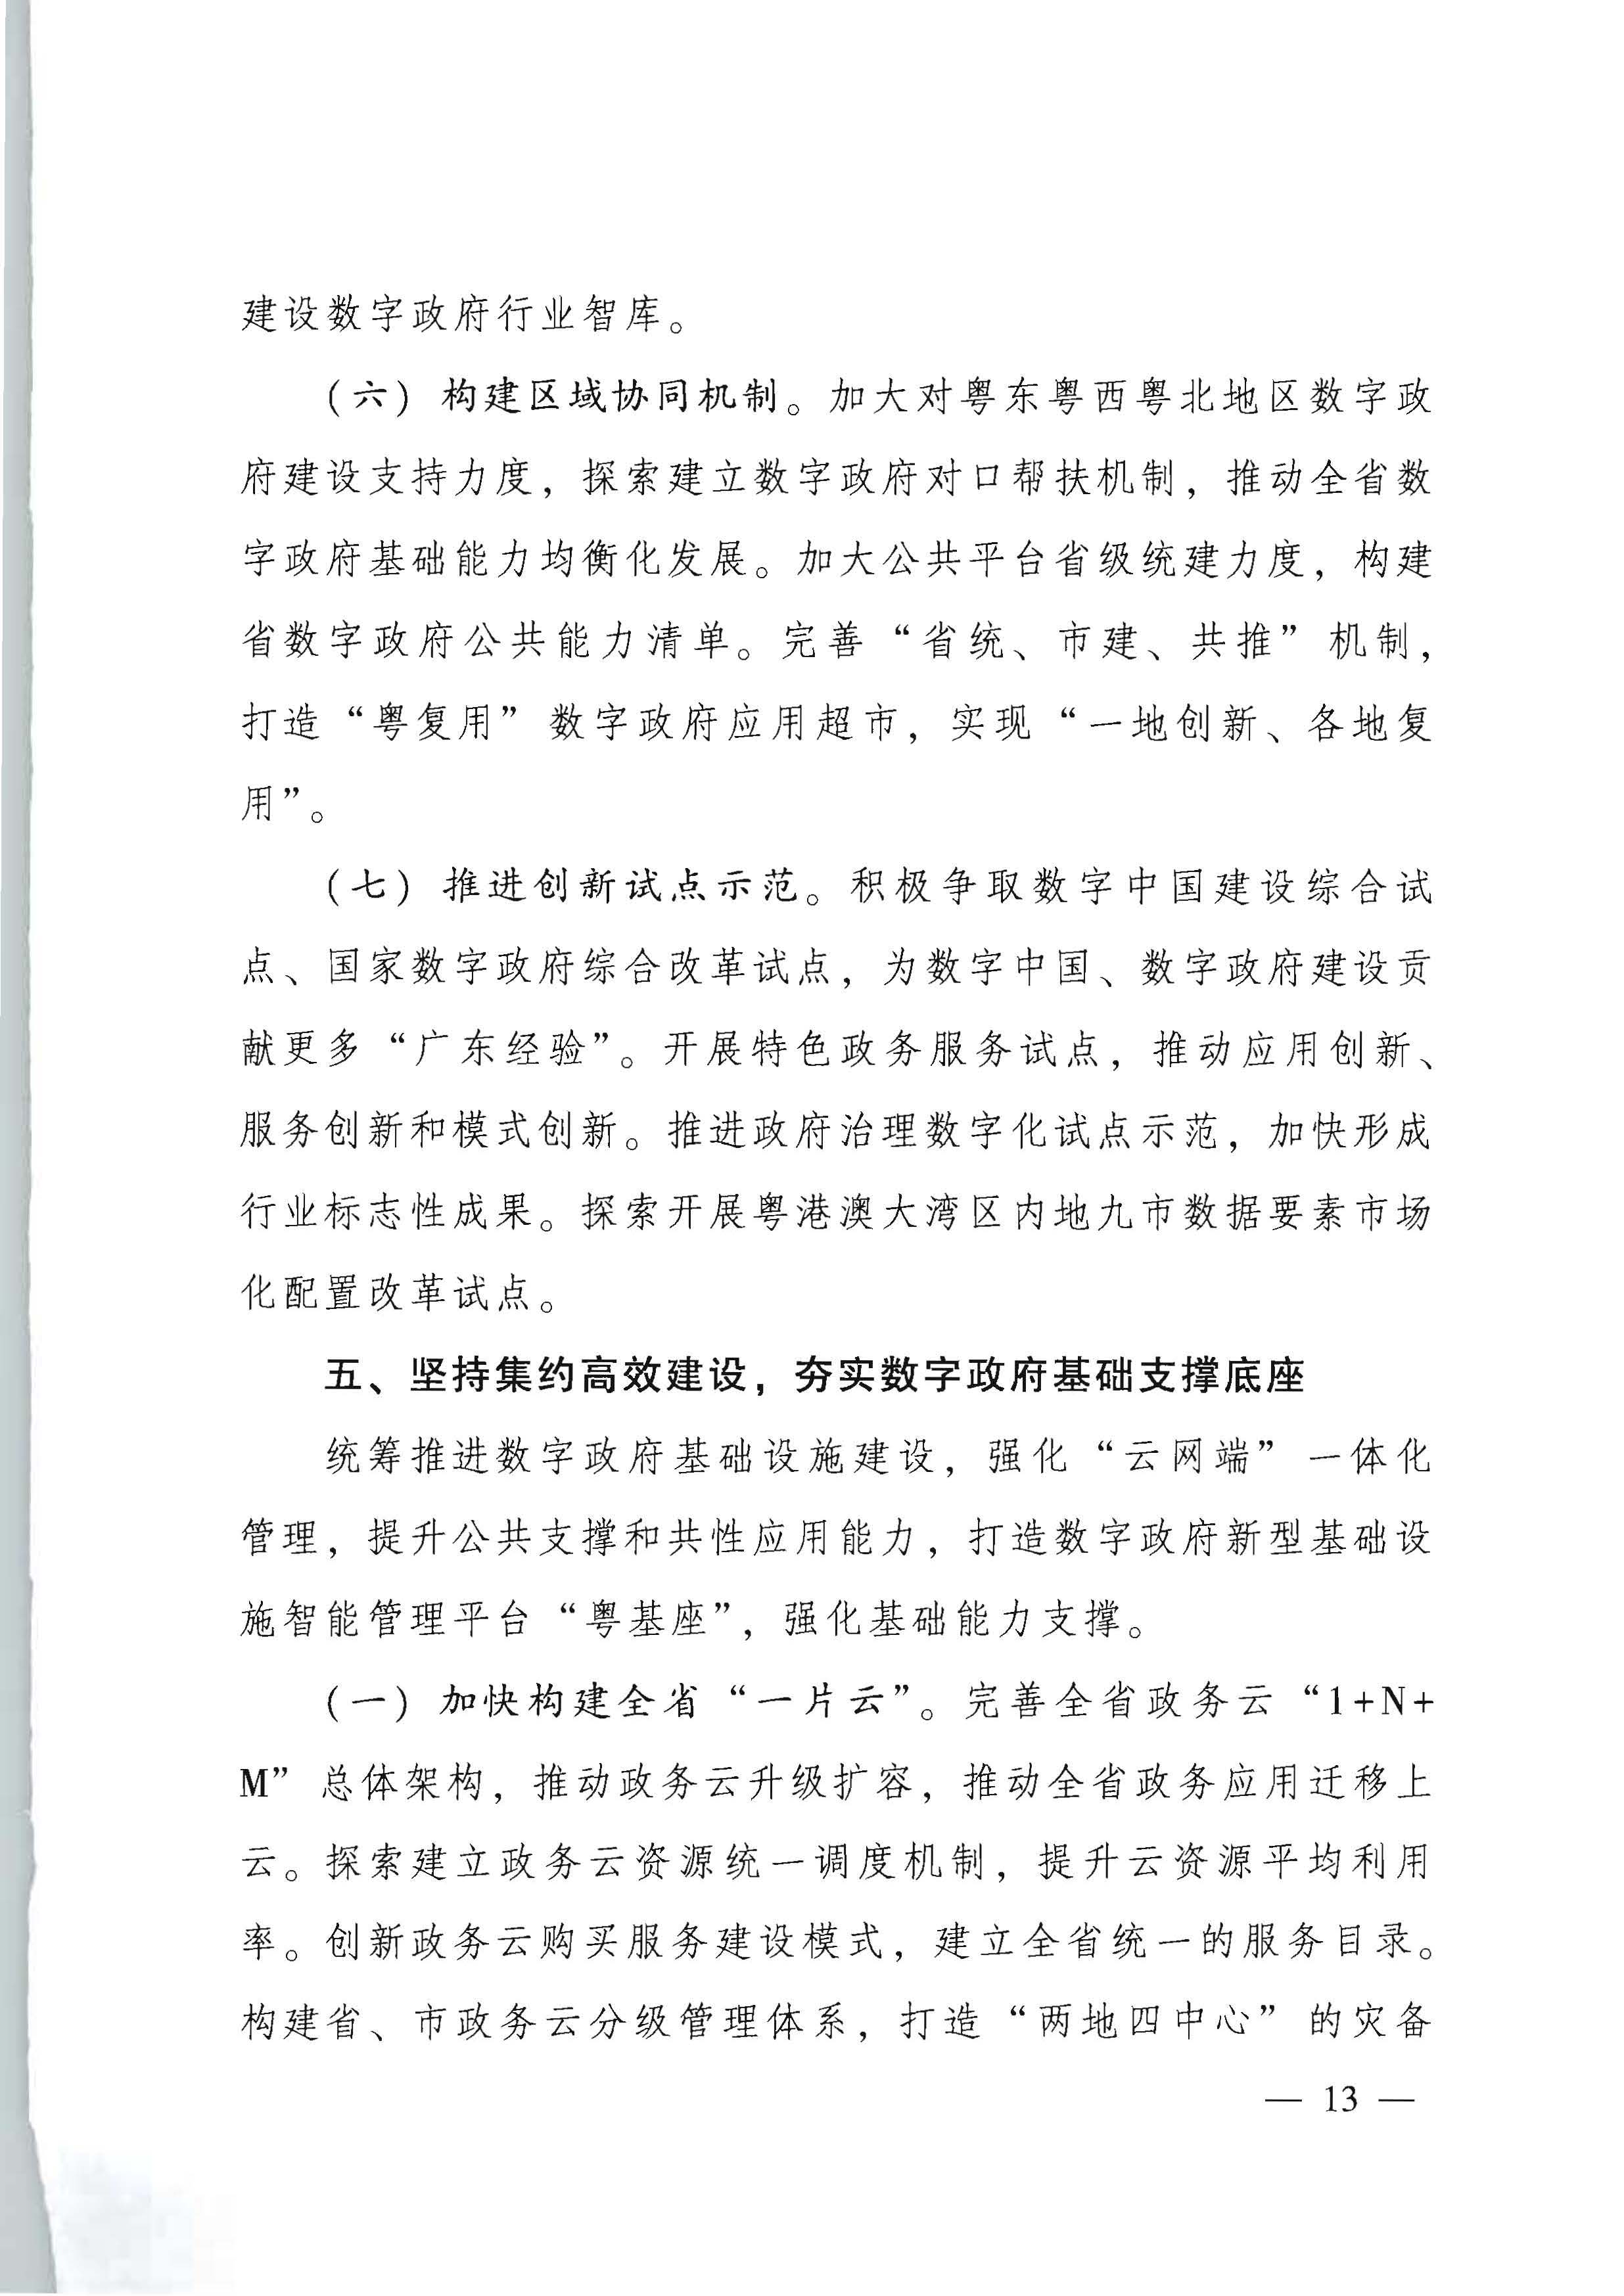 广东省人民政府关于进一步深化数字政府改革建设的实施意见_页面_13.jpg